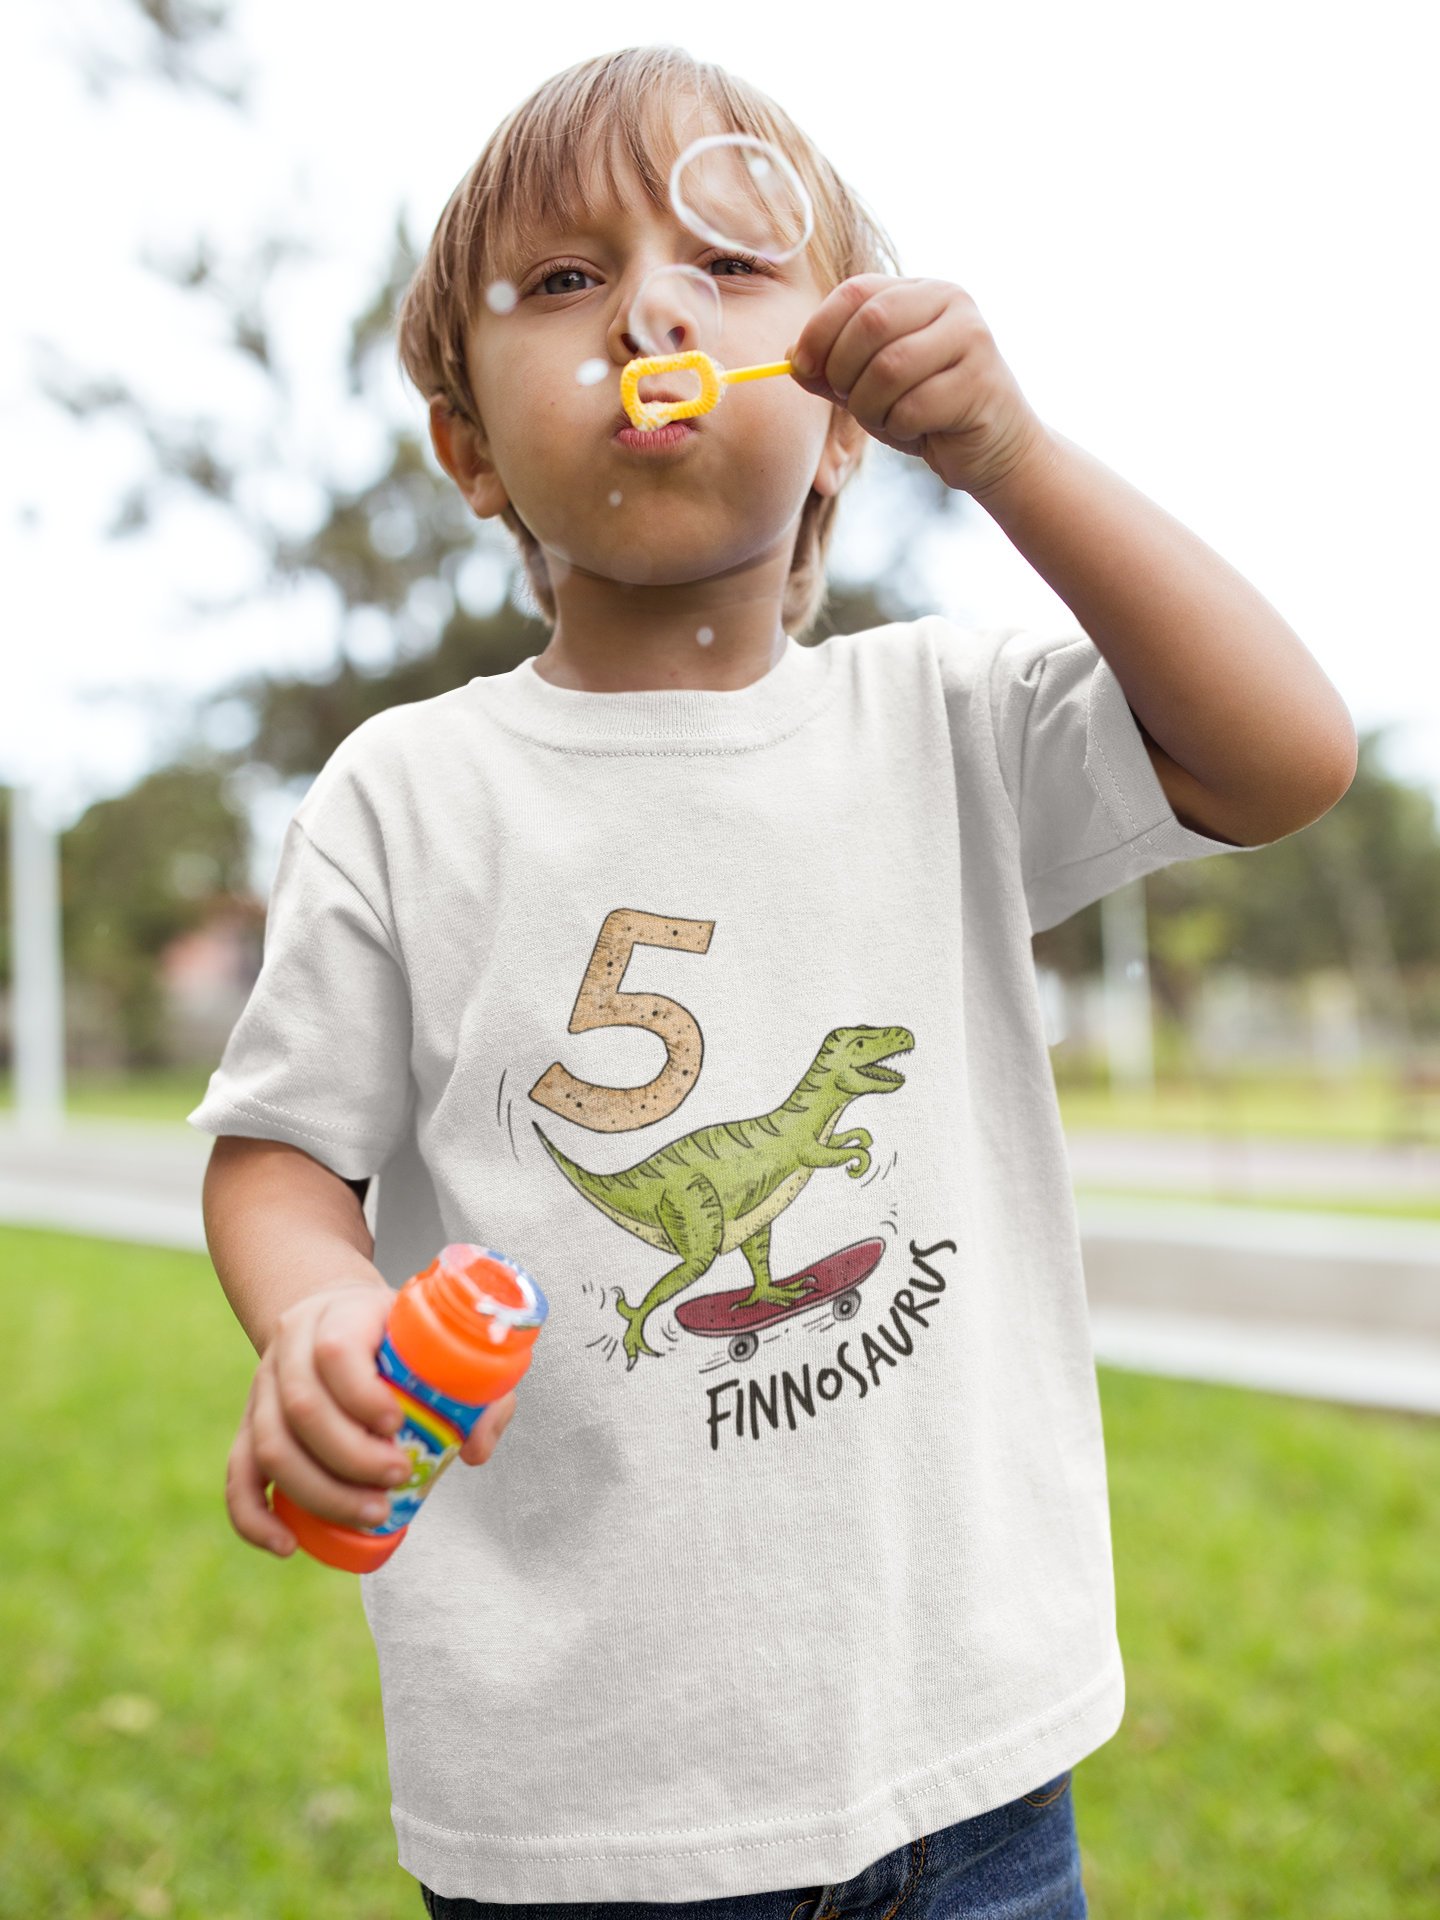 "Dinosaurier" - Personalisiertes Kinder T-Shirt mit eigenem Namen